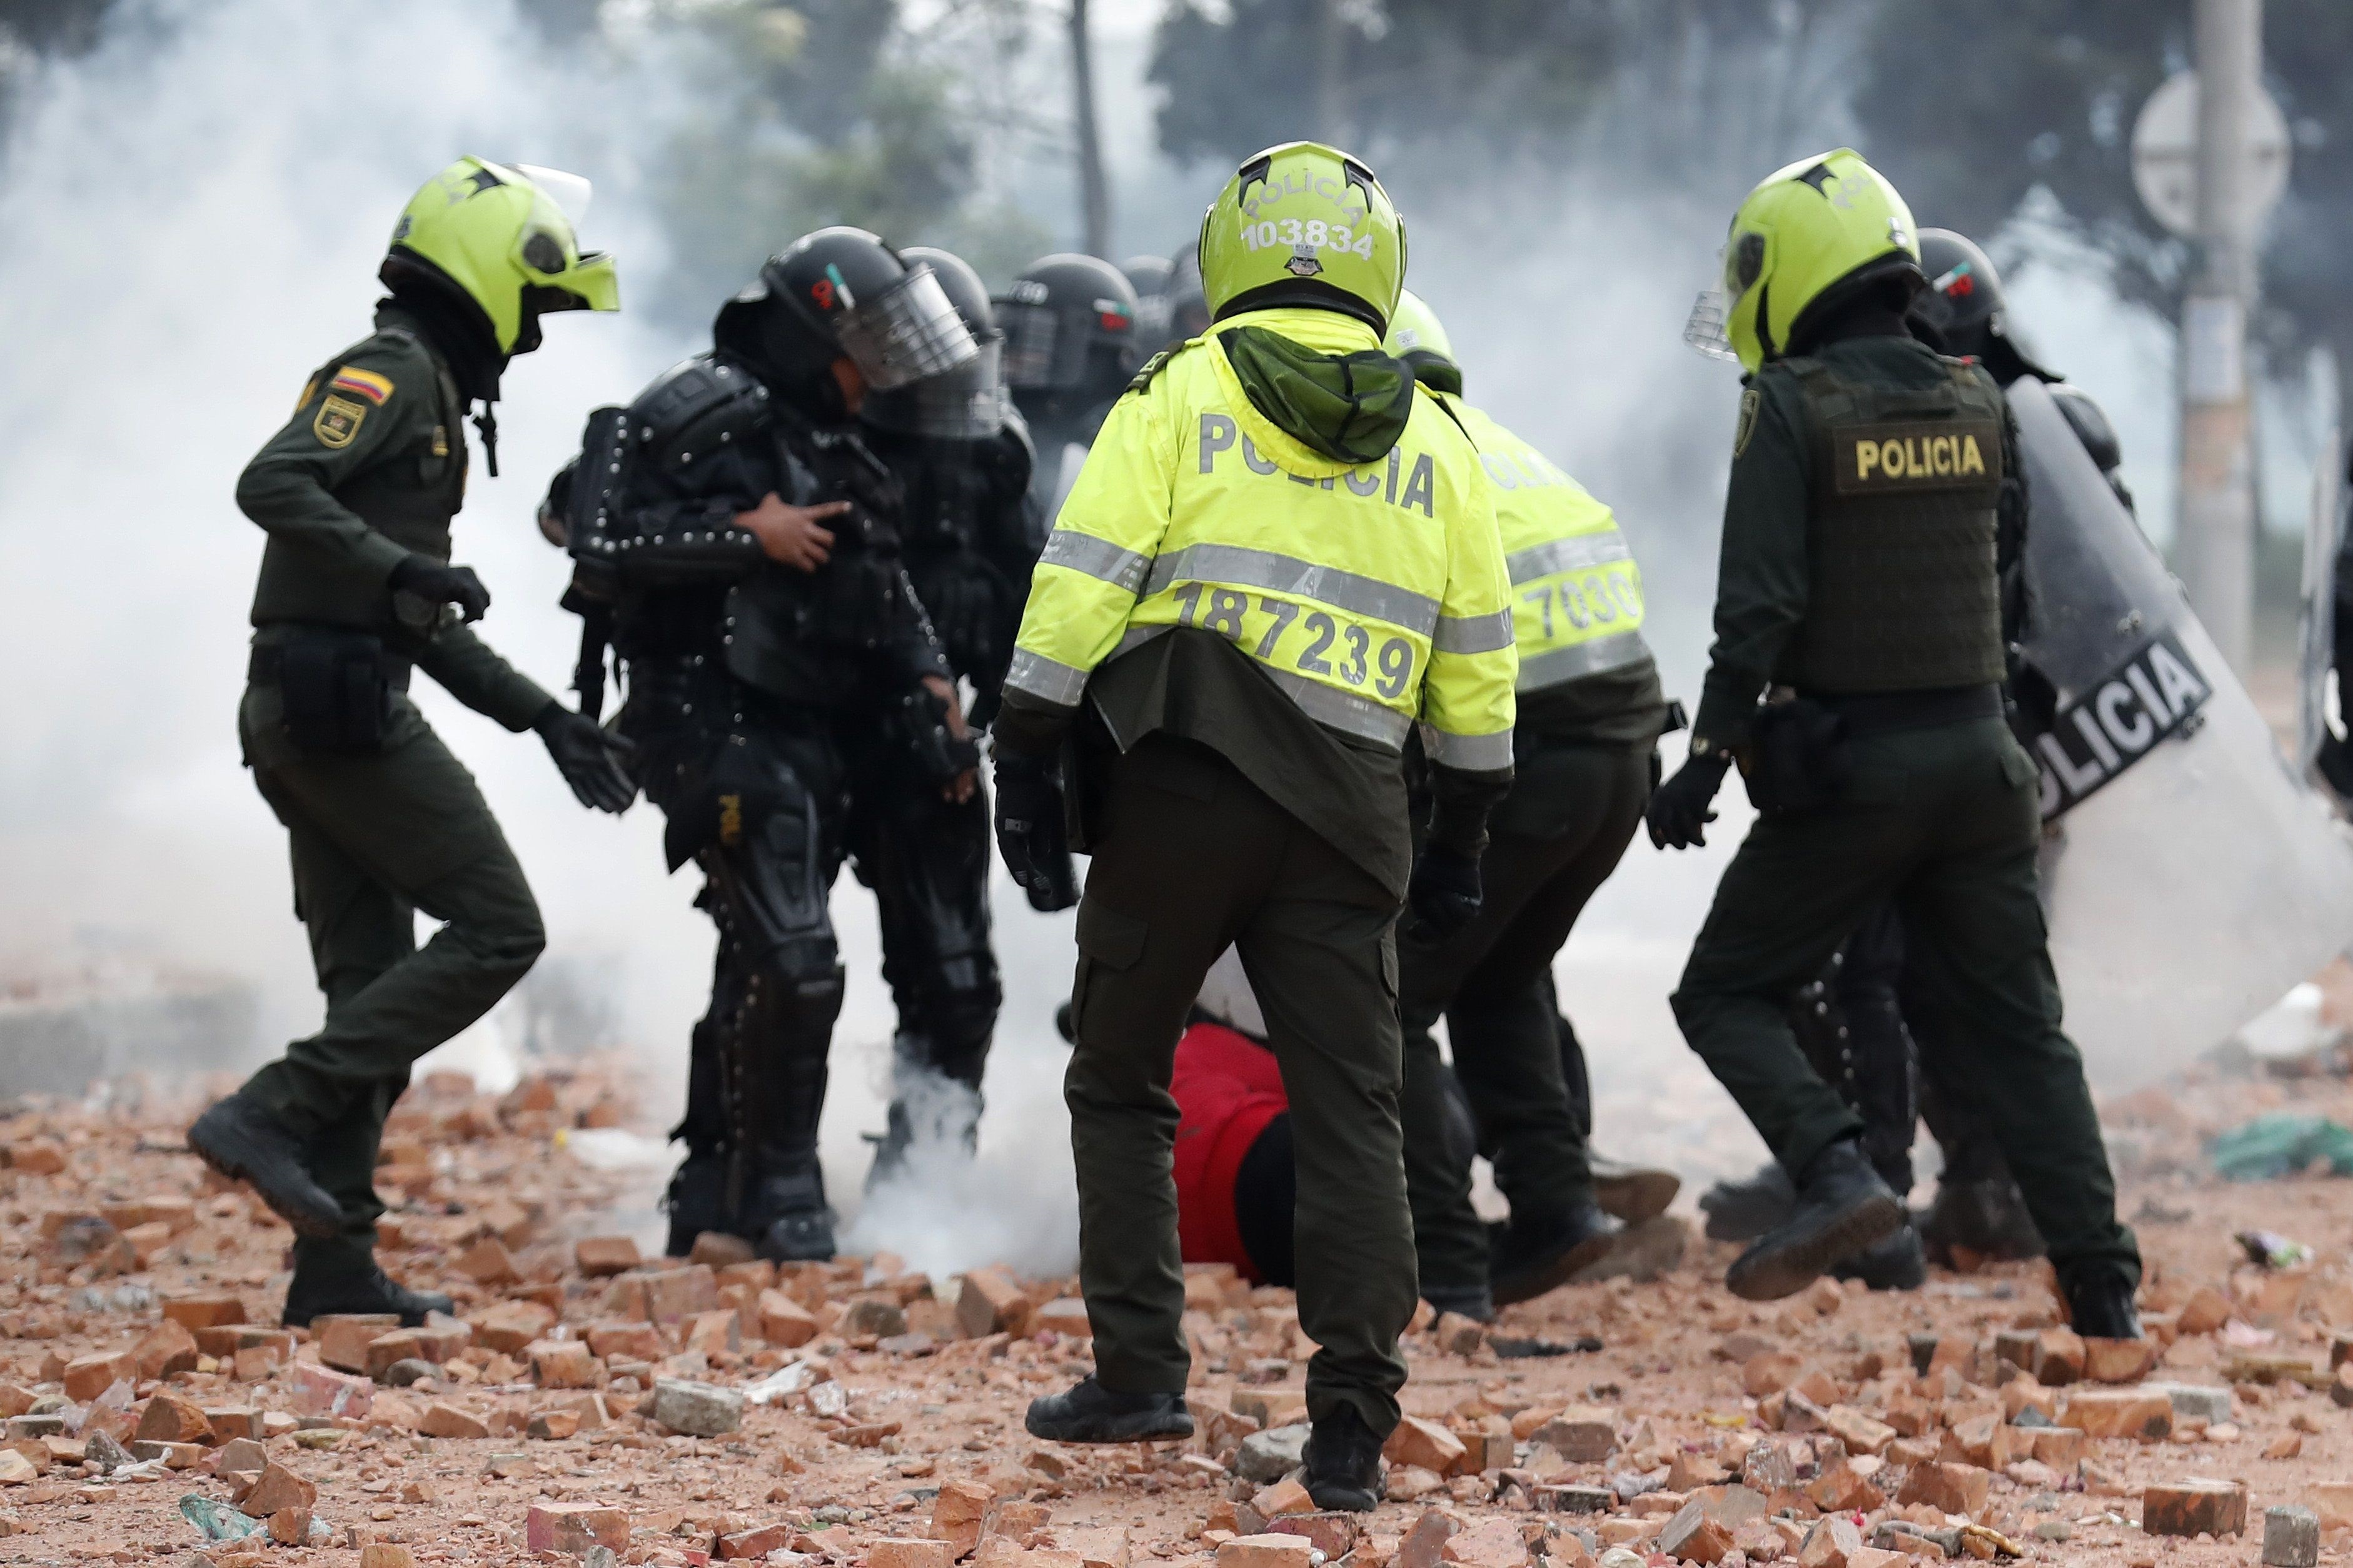 Miembros del Escuadrón Móvil Antidisturbios (ESMAD) retienen a un manifestante durante una jornada de protestas hoy, en Madrid, municipio cercano de Bogotá (Colombia). EFE/Mauricio Dueñas Castañeda
